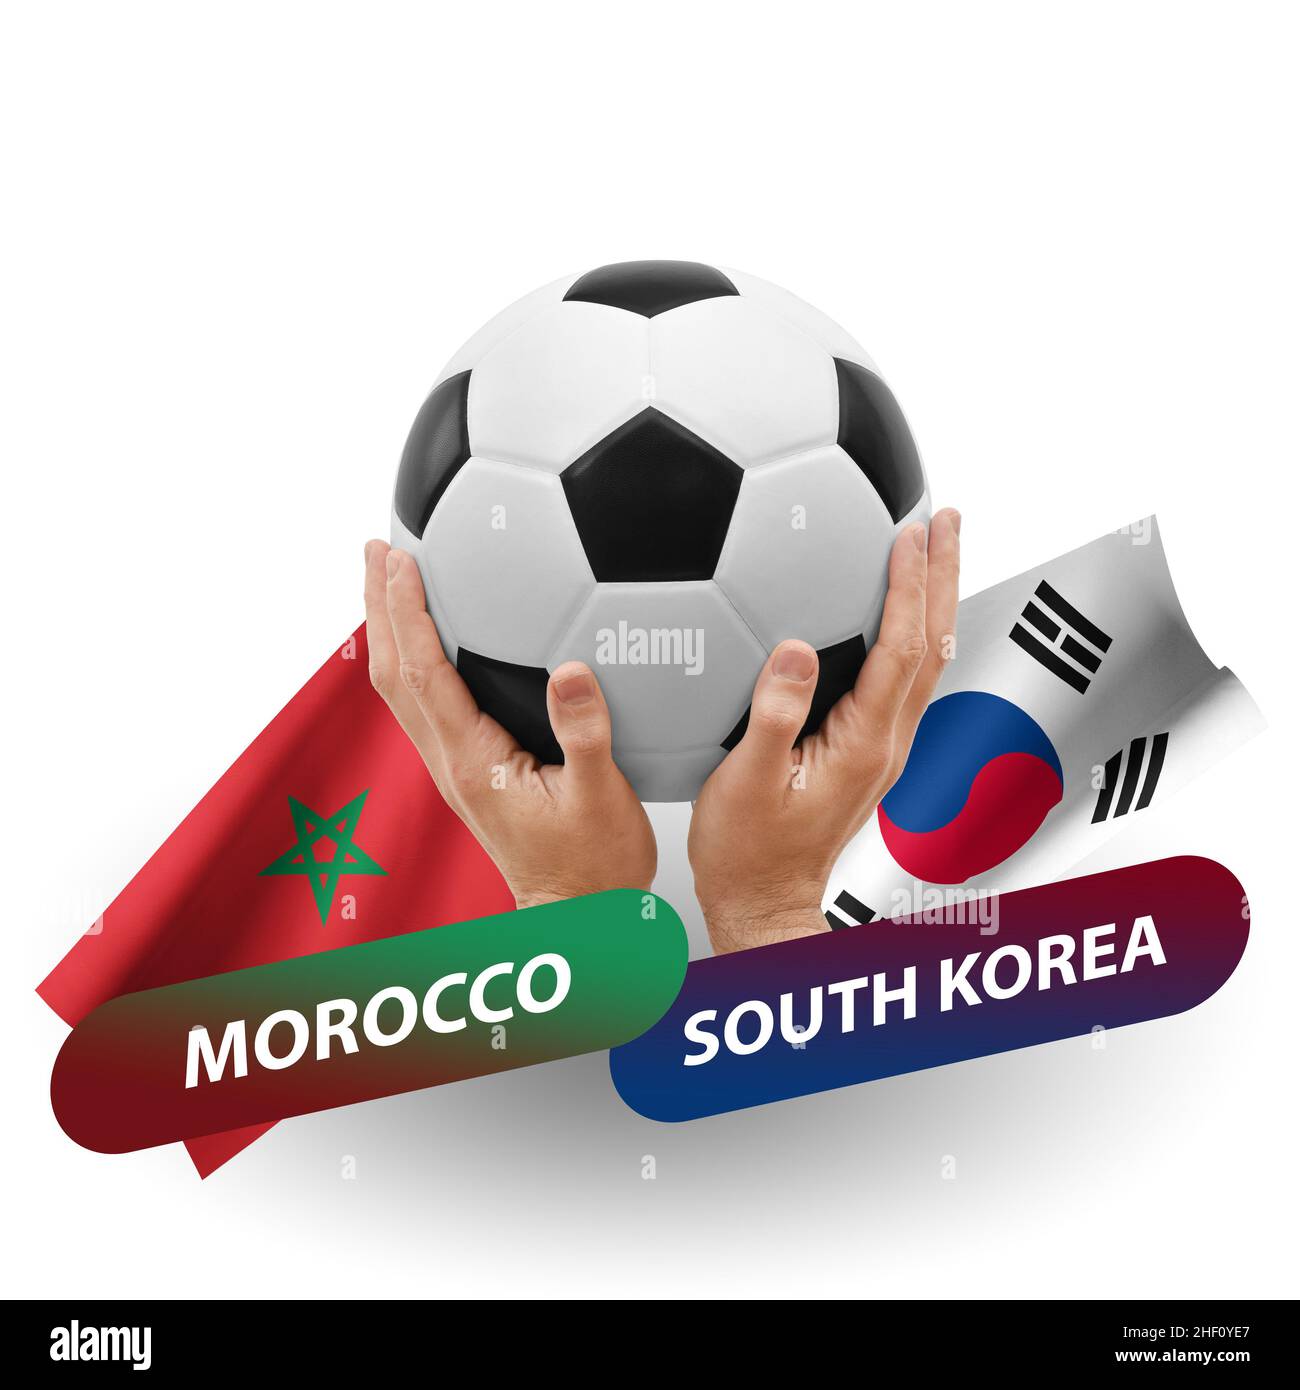 Corea del sur contra marruecos